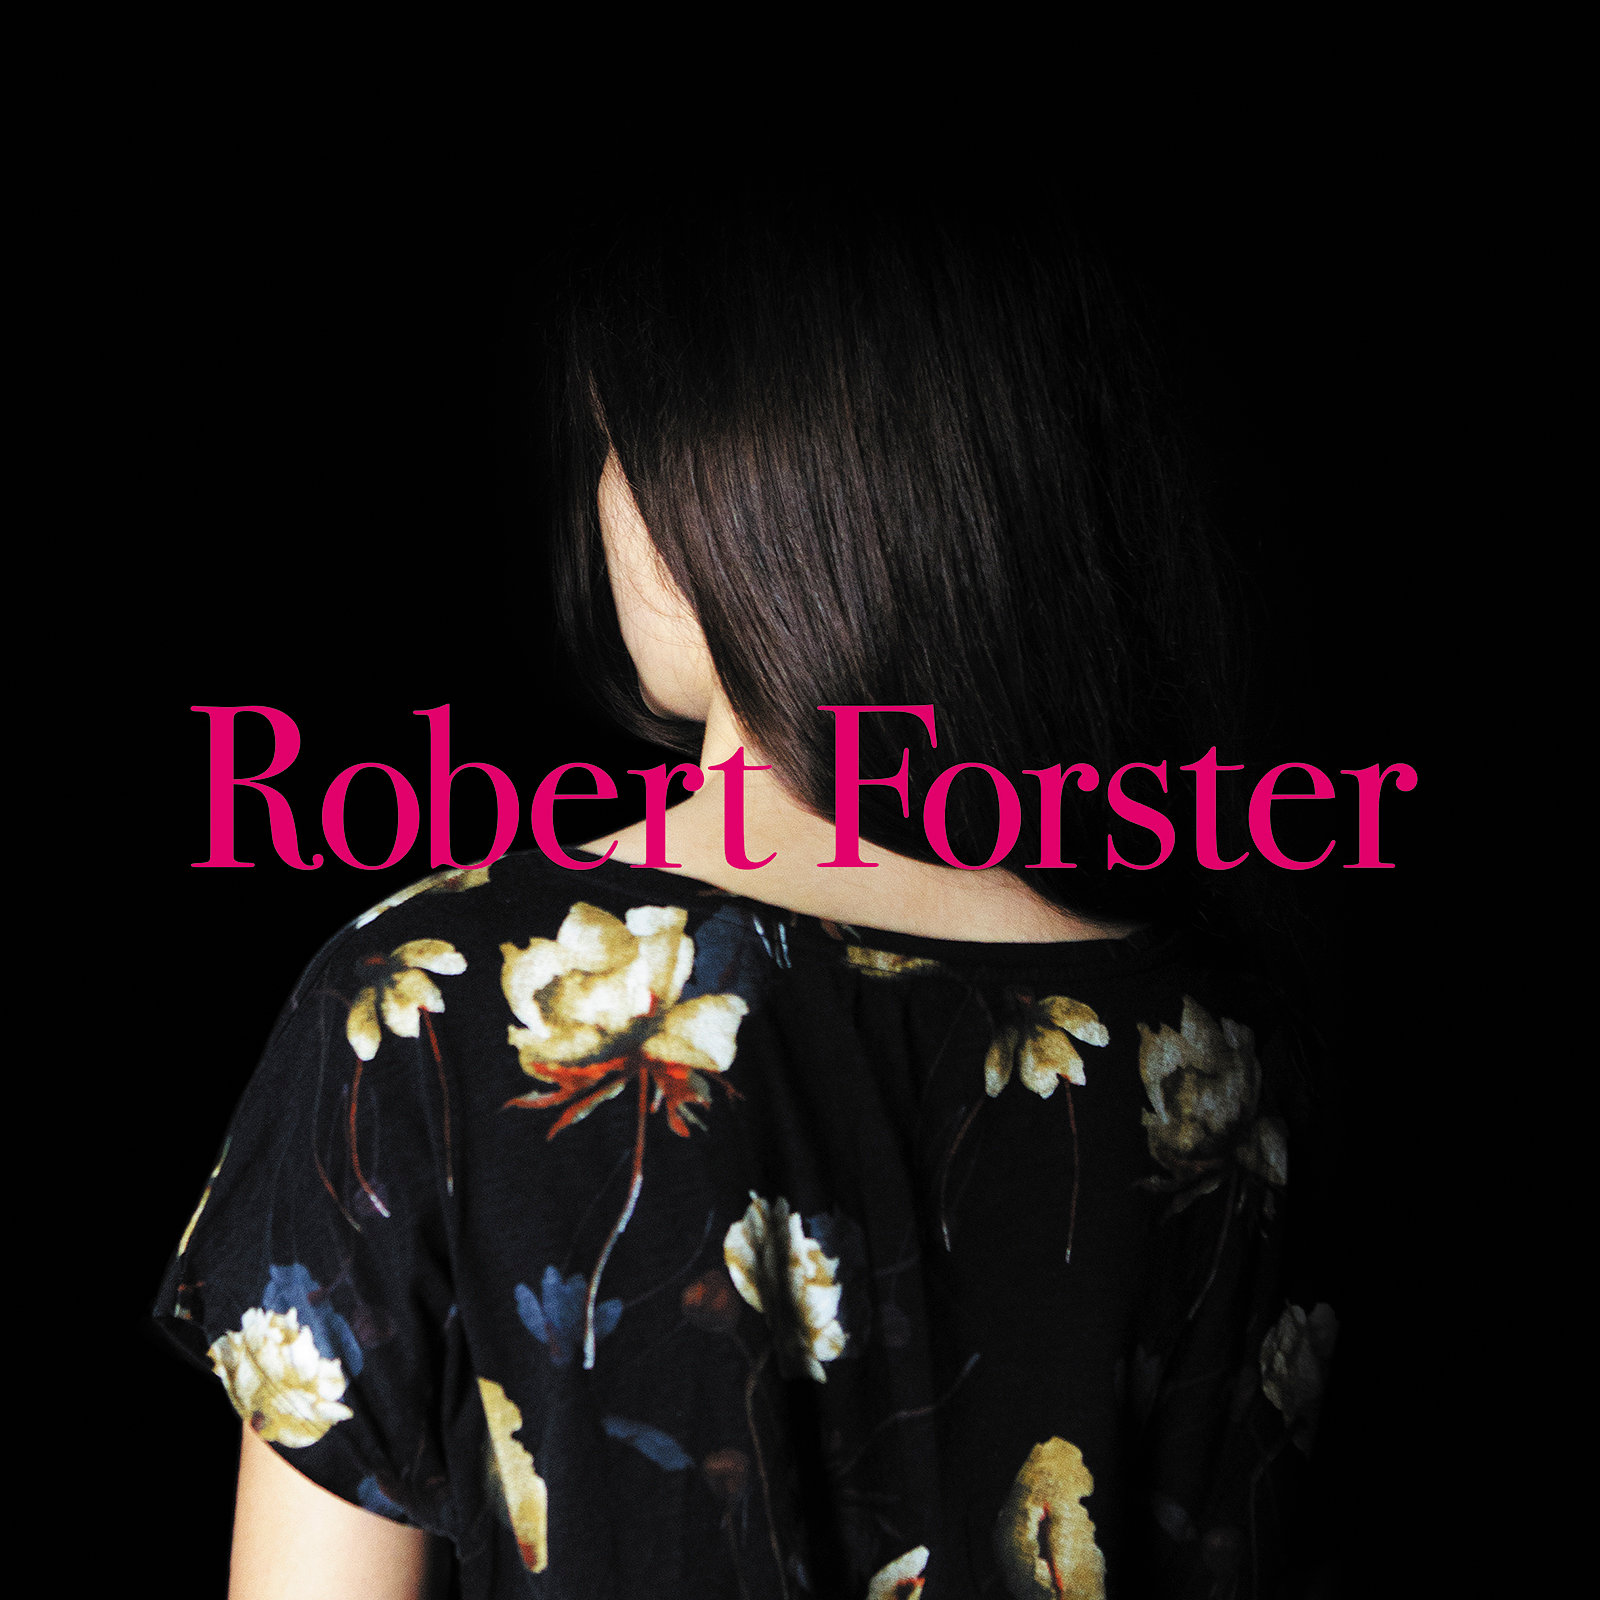 Robert Forster - Album Cover 2015